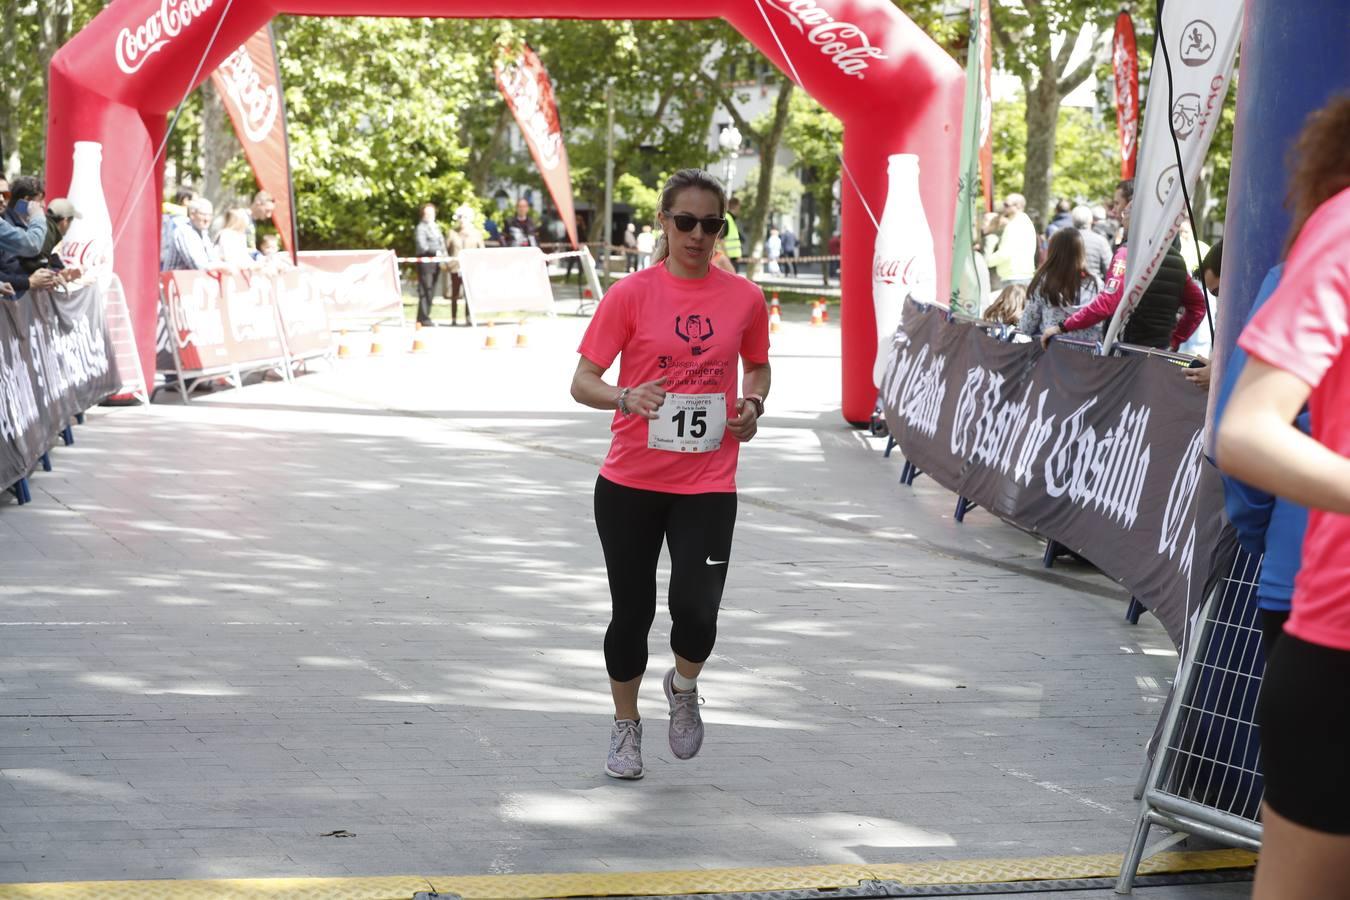 La atleta del club Atletaria Isaac Viciosa, Andrea Román, con un tiempo de 22.05, fue la ganadora de la tercera edición de la Carrera de las Mujeres que se disputó el domingo en las calles de Valladolid.